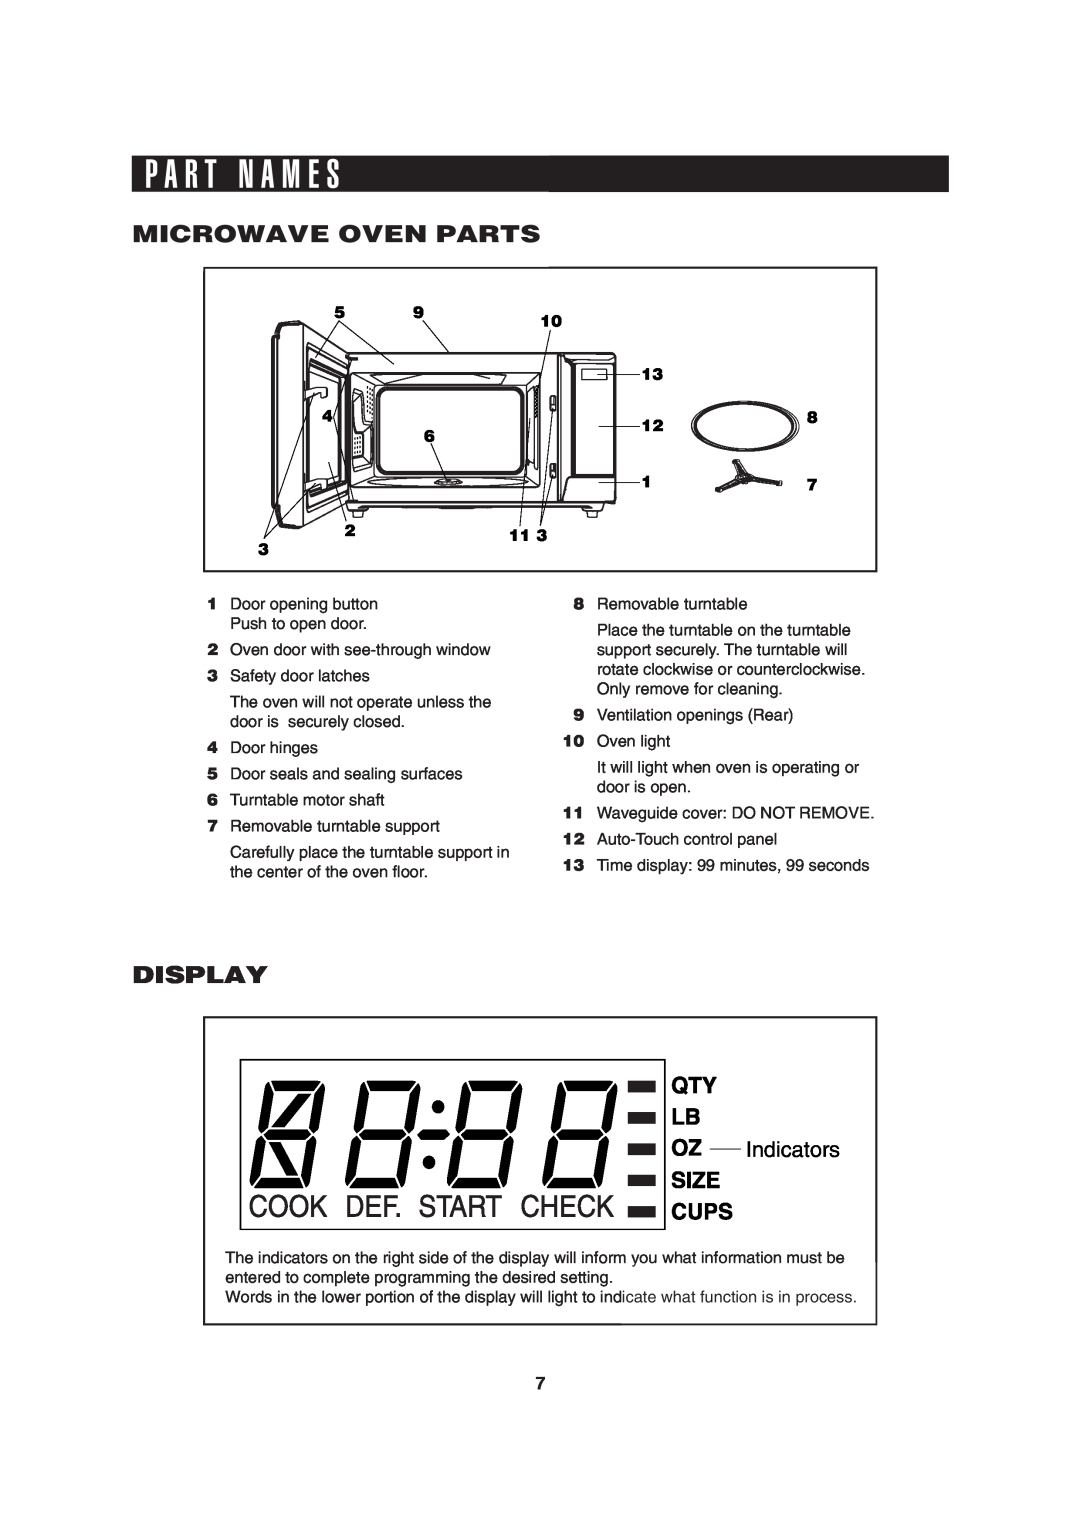 Sharp R-310H operation manual P A R T N A M E S, Microwave Oven Parts, Display, Indicators 